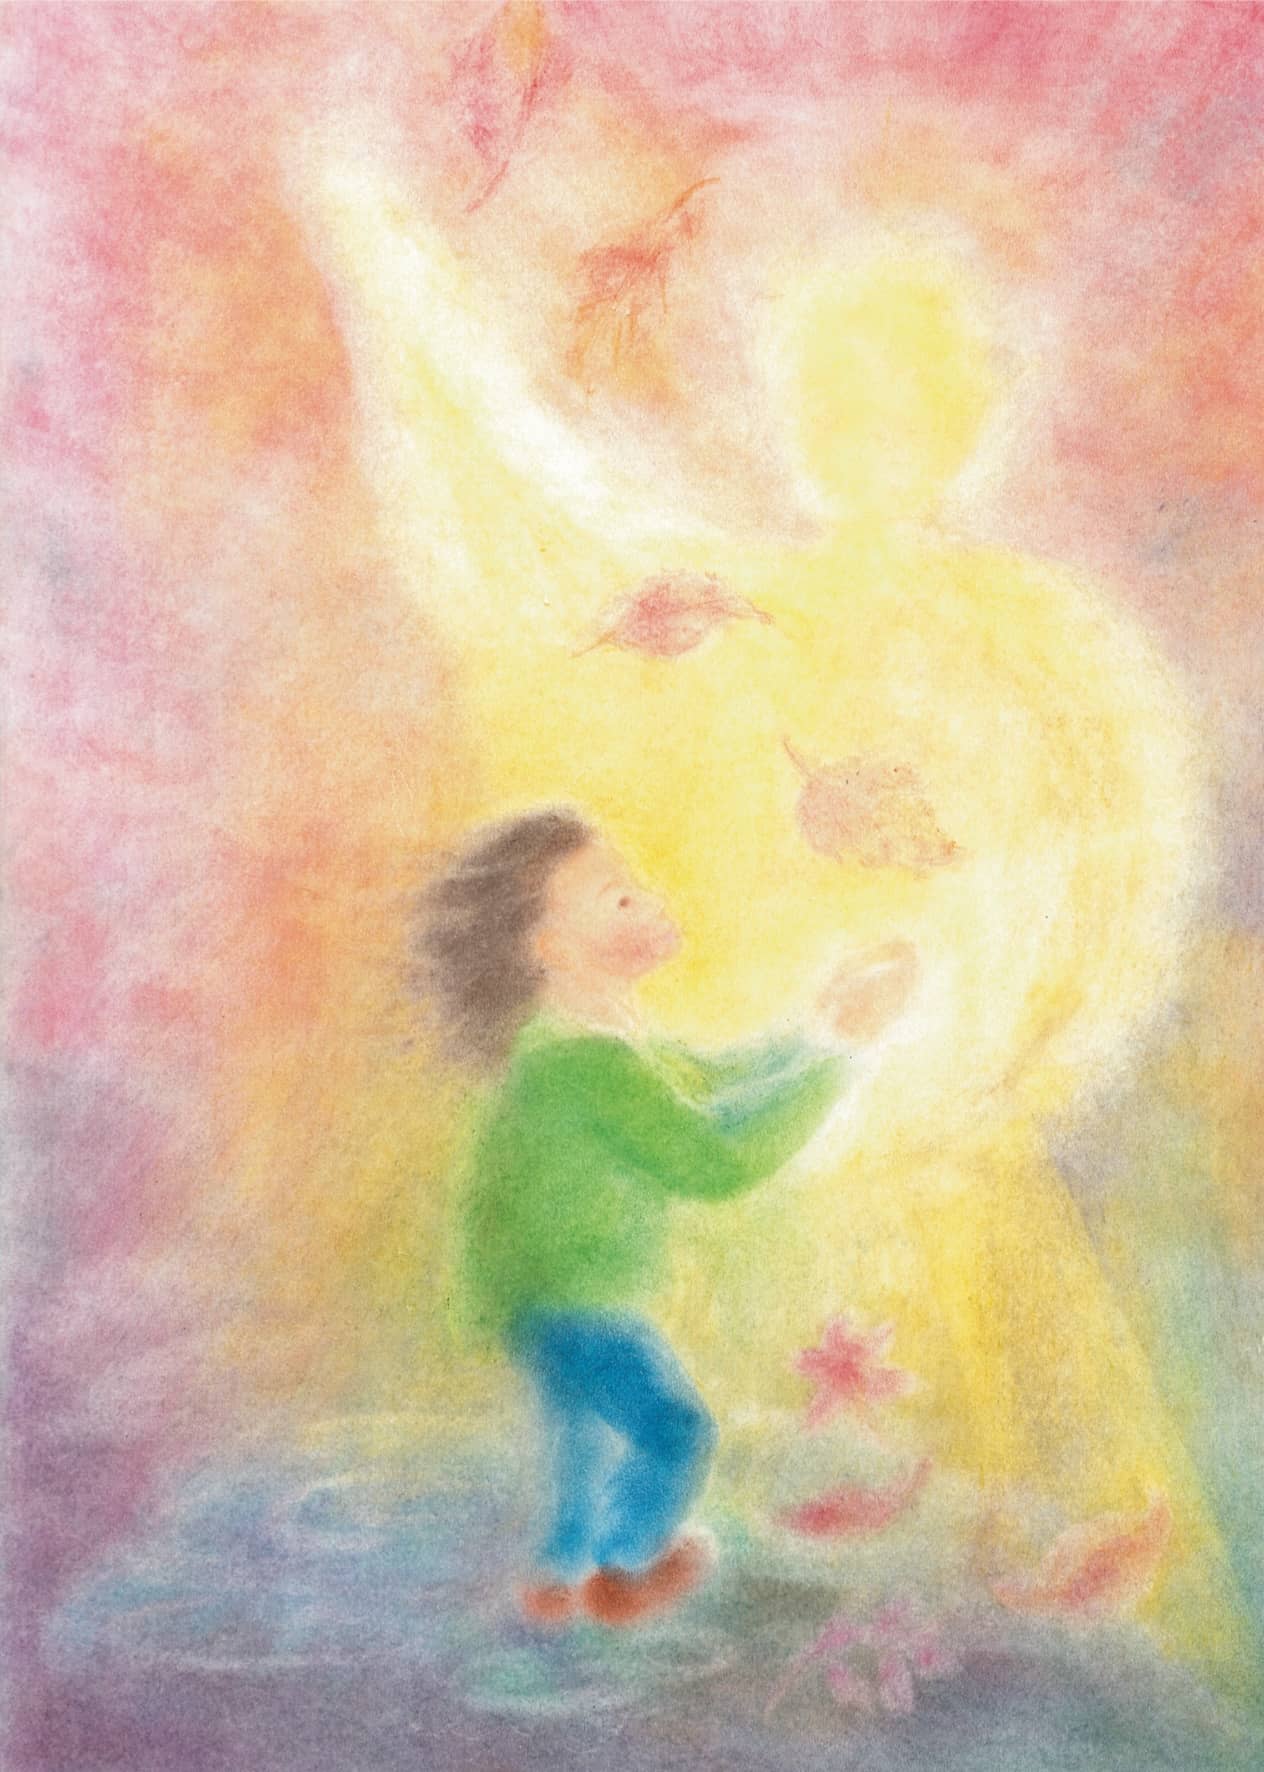 Seccorell Postkarte "Schutzengel" zeigt einen Engel, der behütend über ein Kind wacht, dargestellt in weichen Seccorell-Farben, die Wärme und Geborgenheit ausstrahlen.